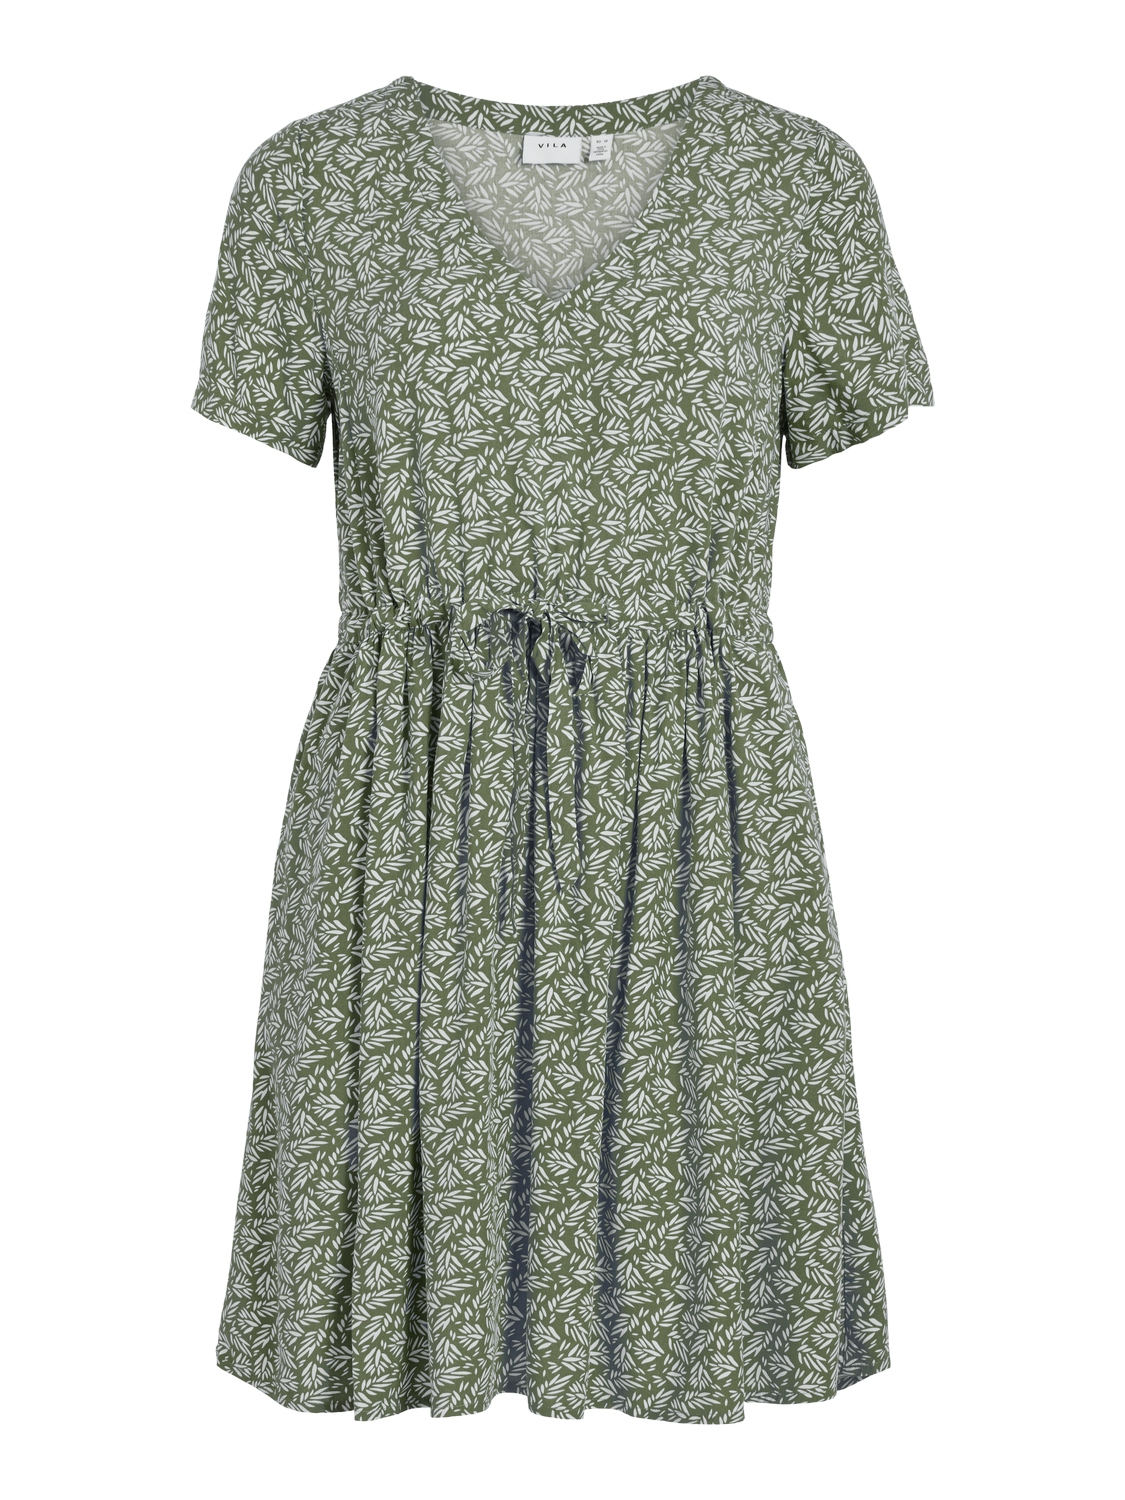 Vila Vilise Nua S/S V-neck Short Dress, grønn/mønstret